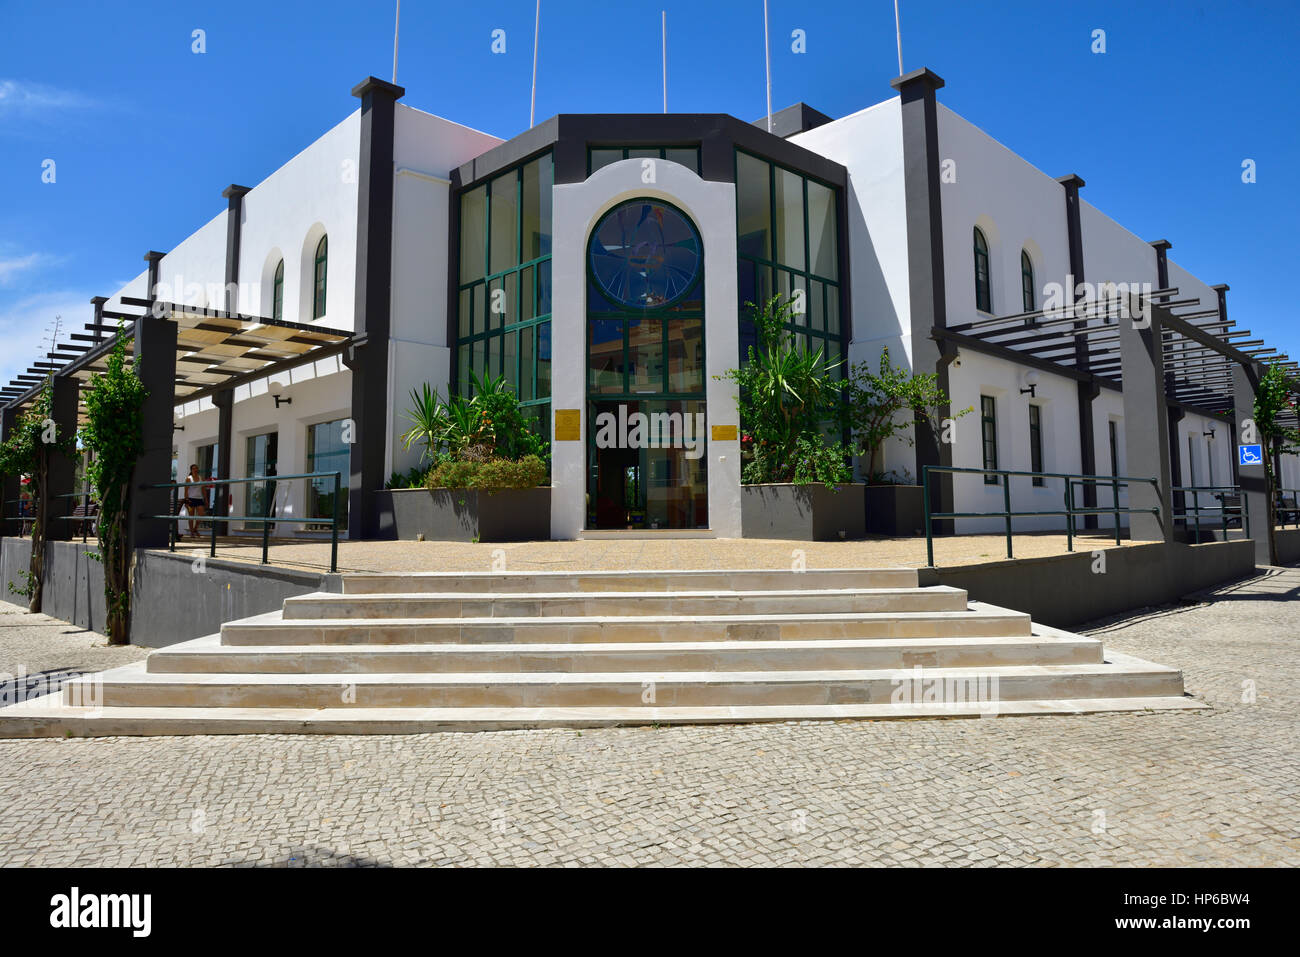 Unione Europea sociale finanziato e centro culturale nella piccola cittadina di Almansil, Algarve, PORTOGALLO Foto Stock